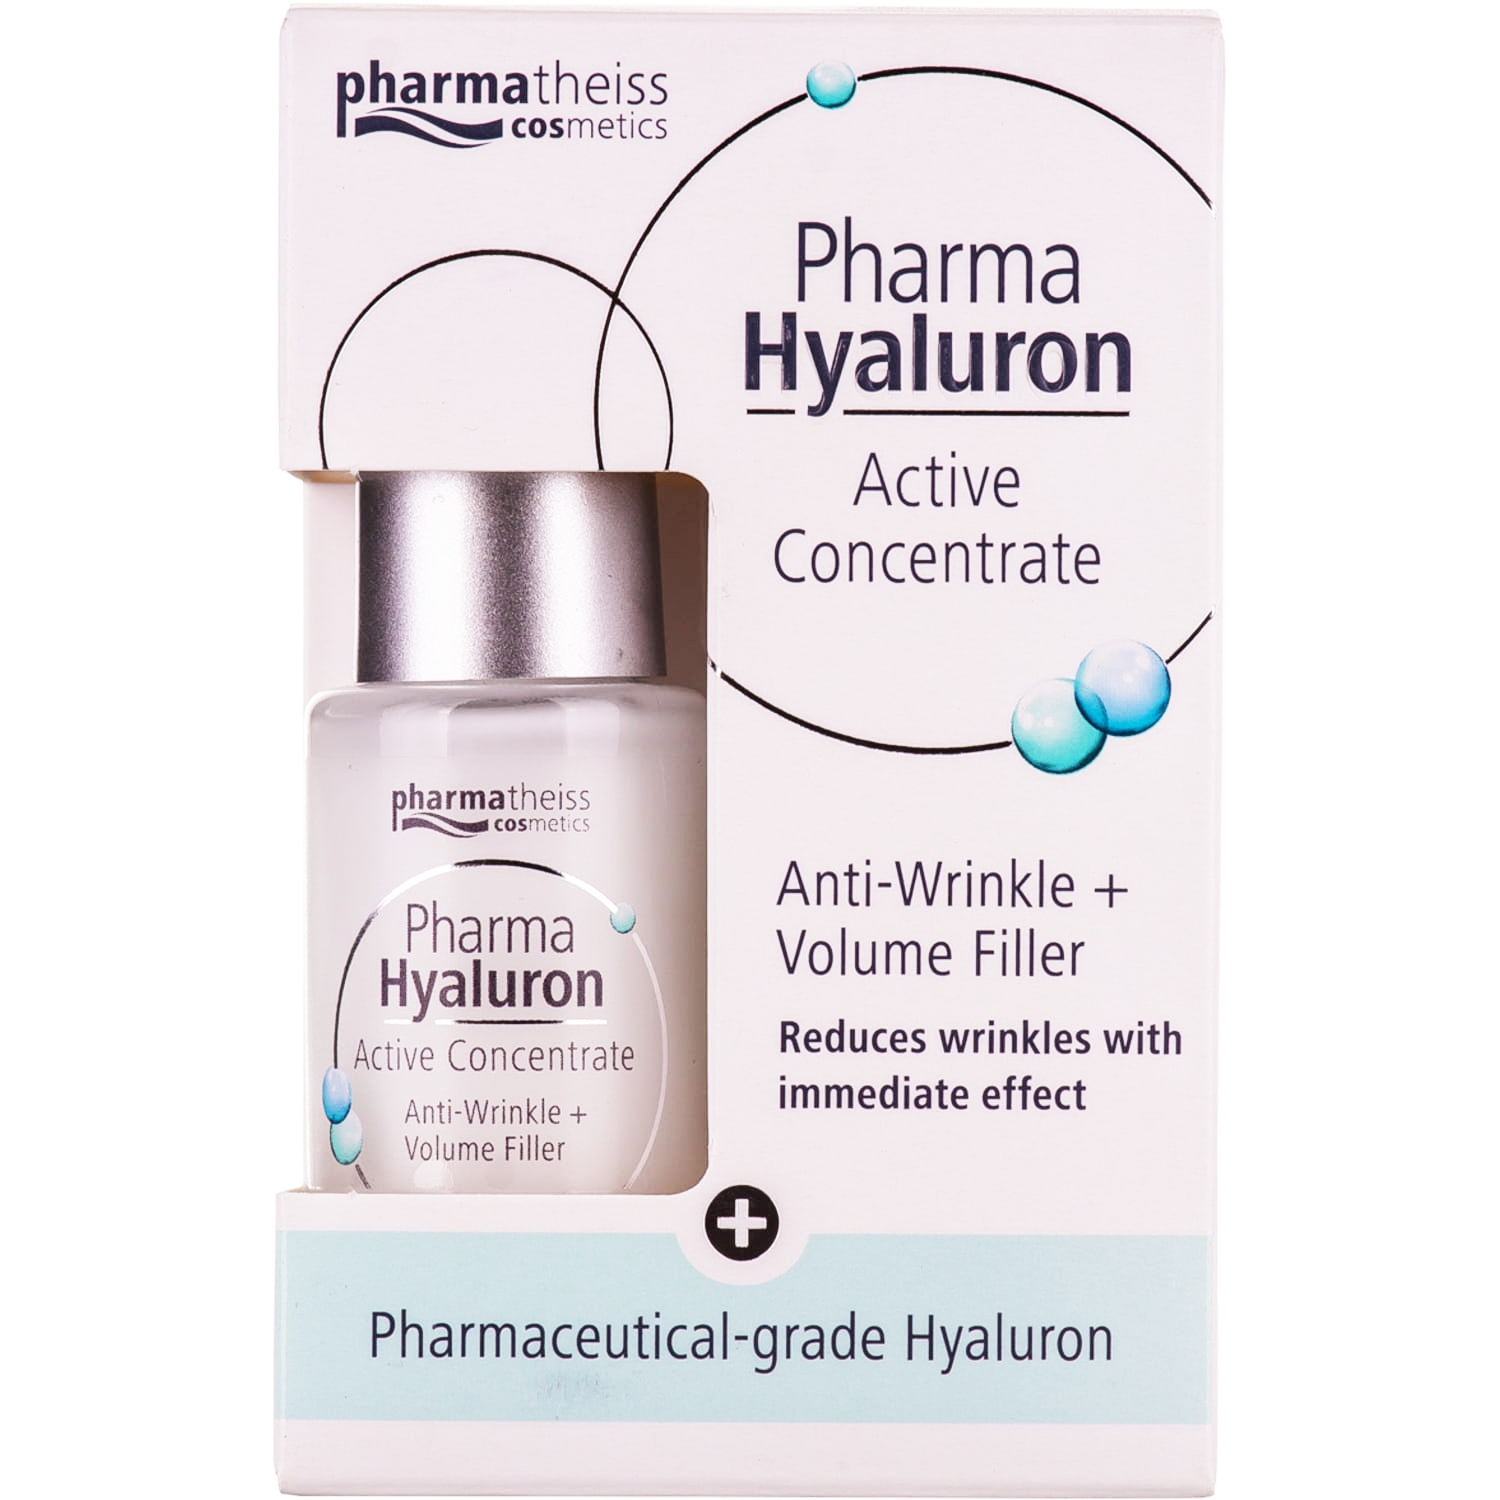 Pharma Hyaluron сыворотка против морщин Активный гиалурон-концентрат + Упругость, 13 мл